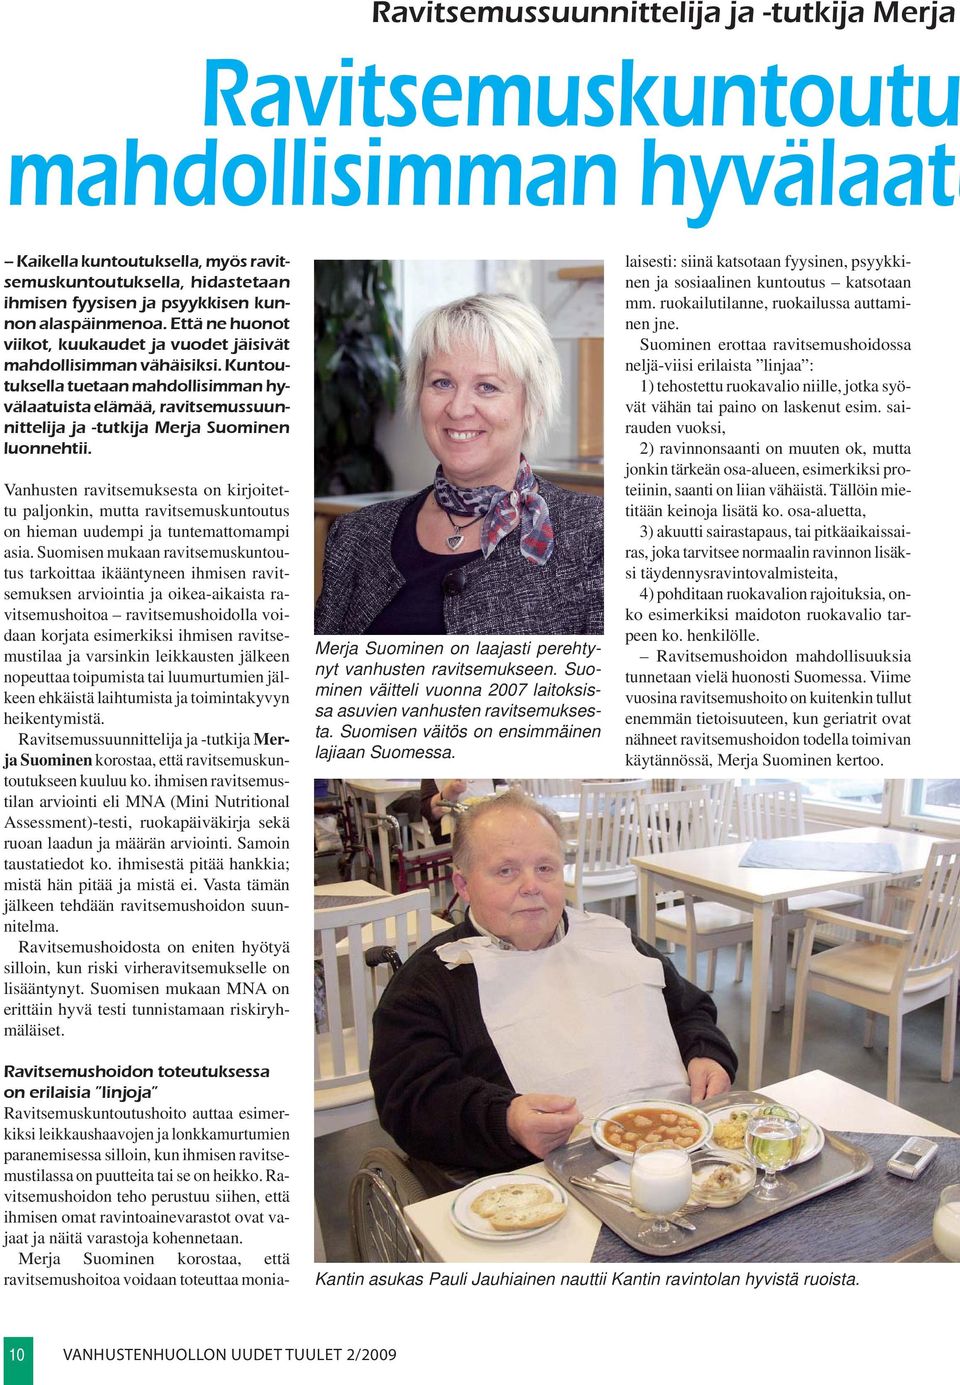 Kuntoutuksella tuetaan mahdollisimman hyvälaatuista elämää, ravitsemussuunnittelija ja -tutkija Merja Suominen luonnehtii.